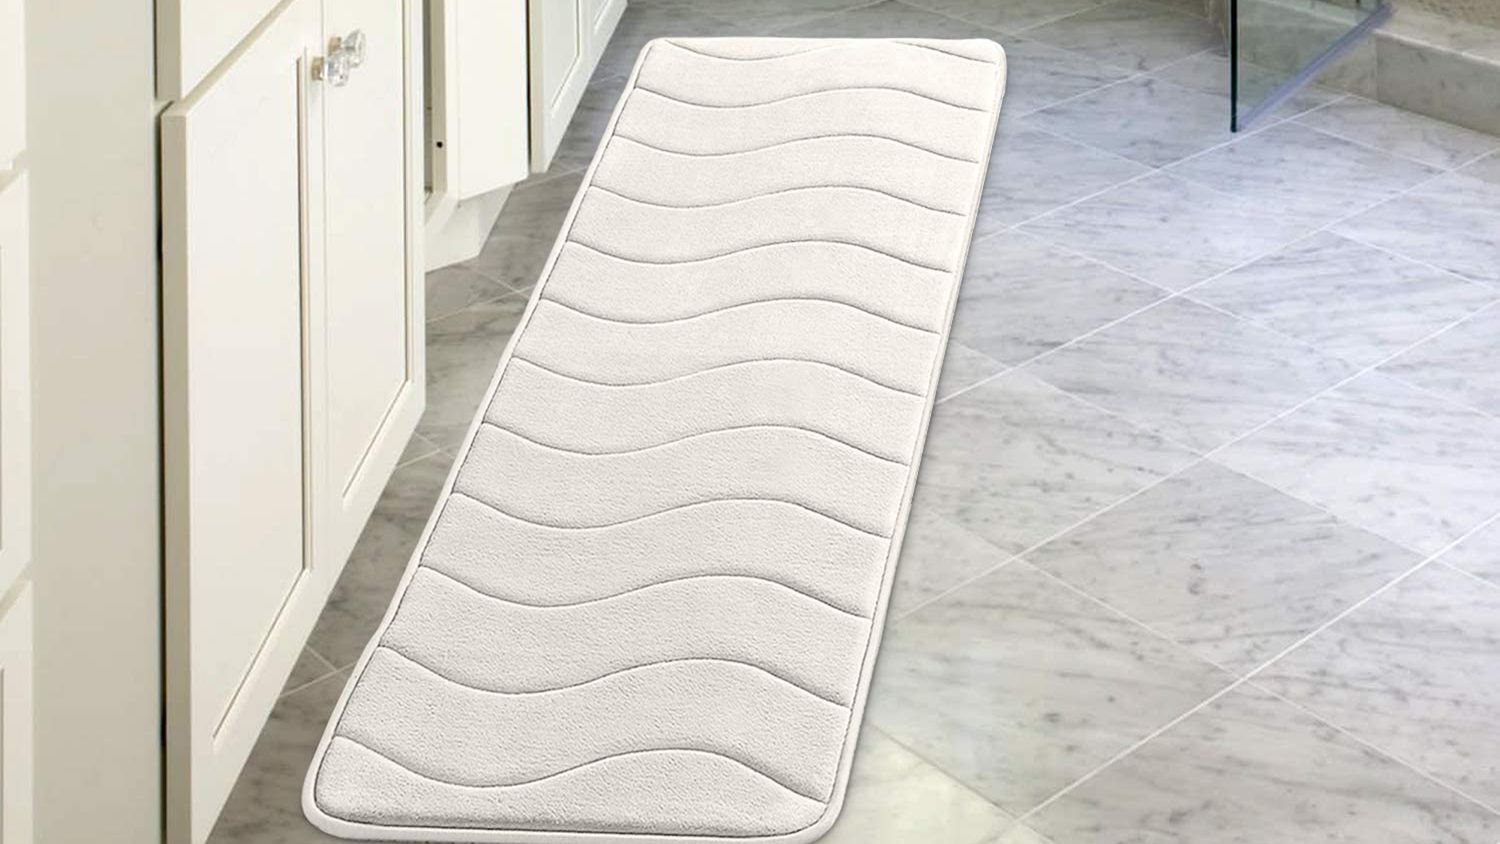 Absorbent Soft Memory Foam Bath Bathroom Bedroom Floor Mat Shower Rug Non-slip 